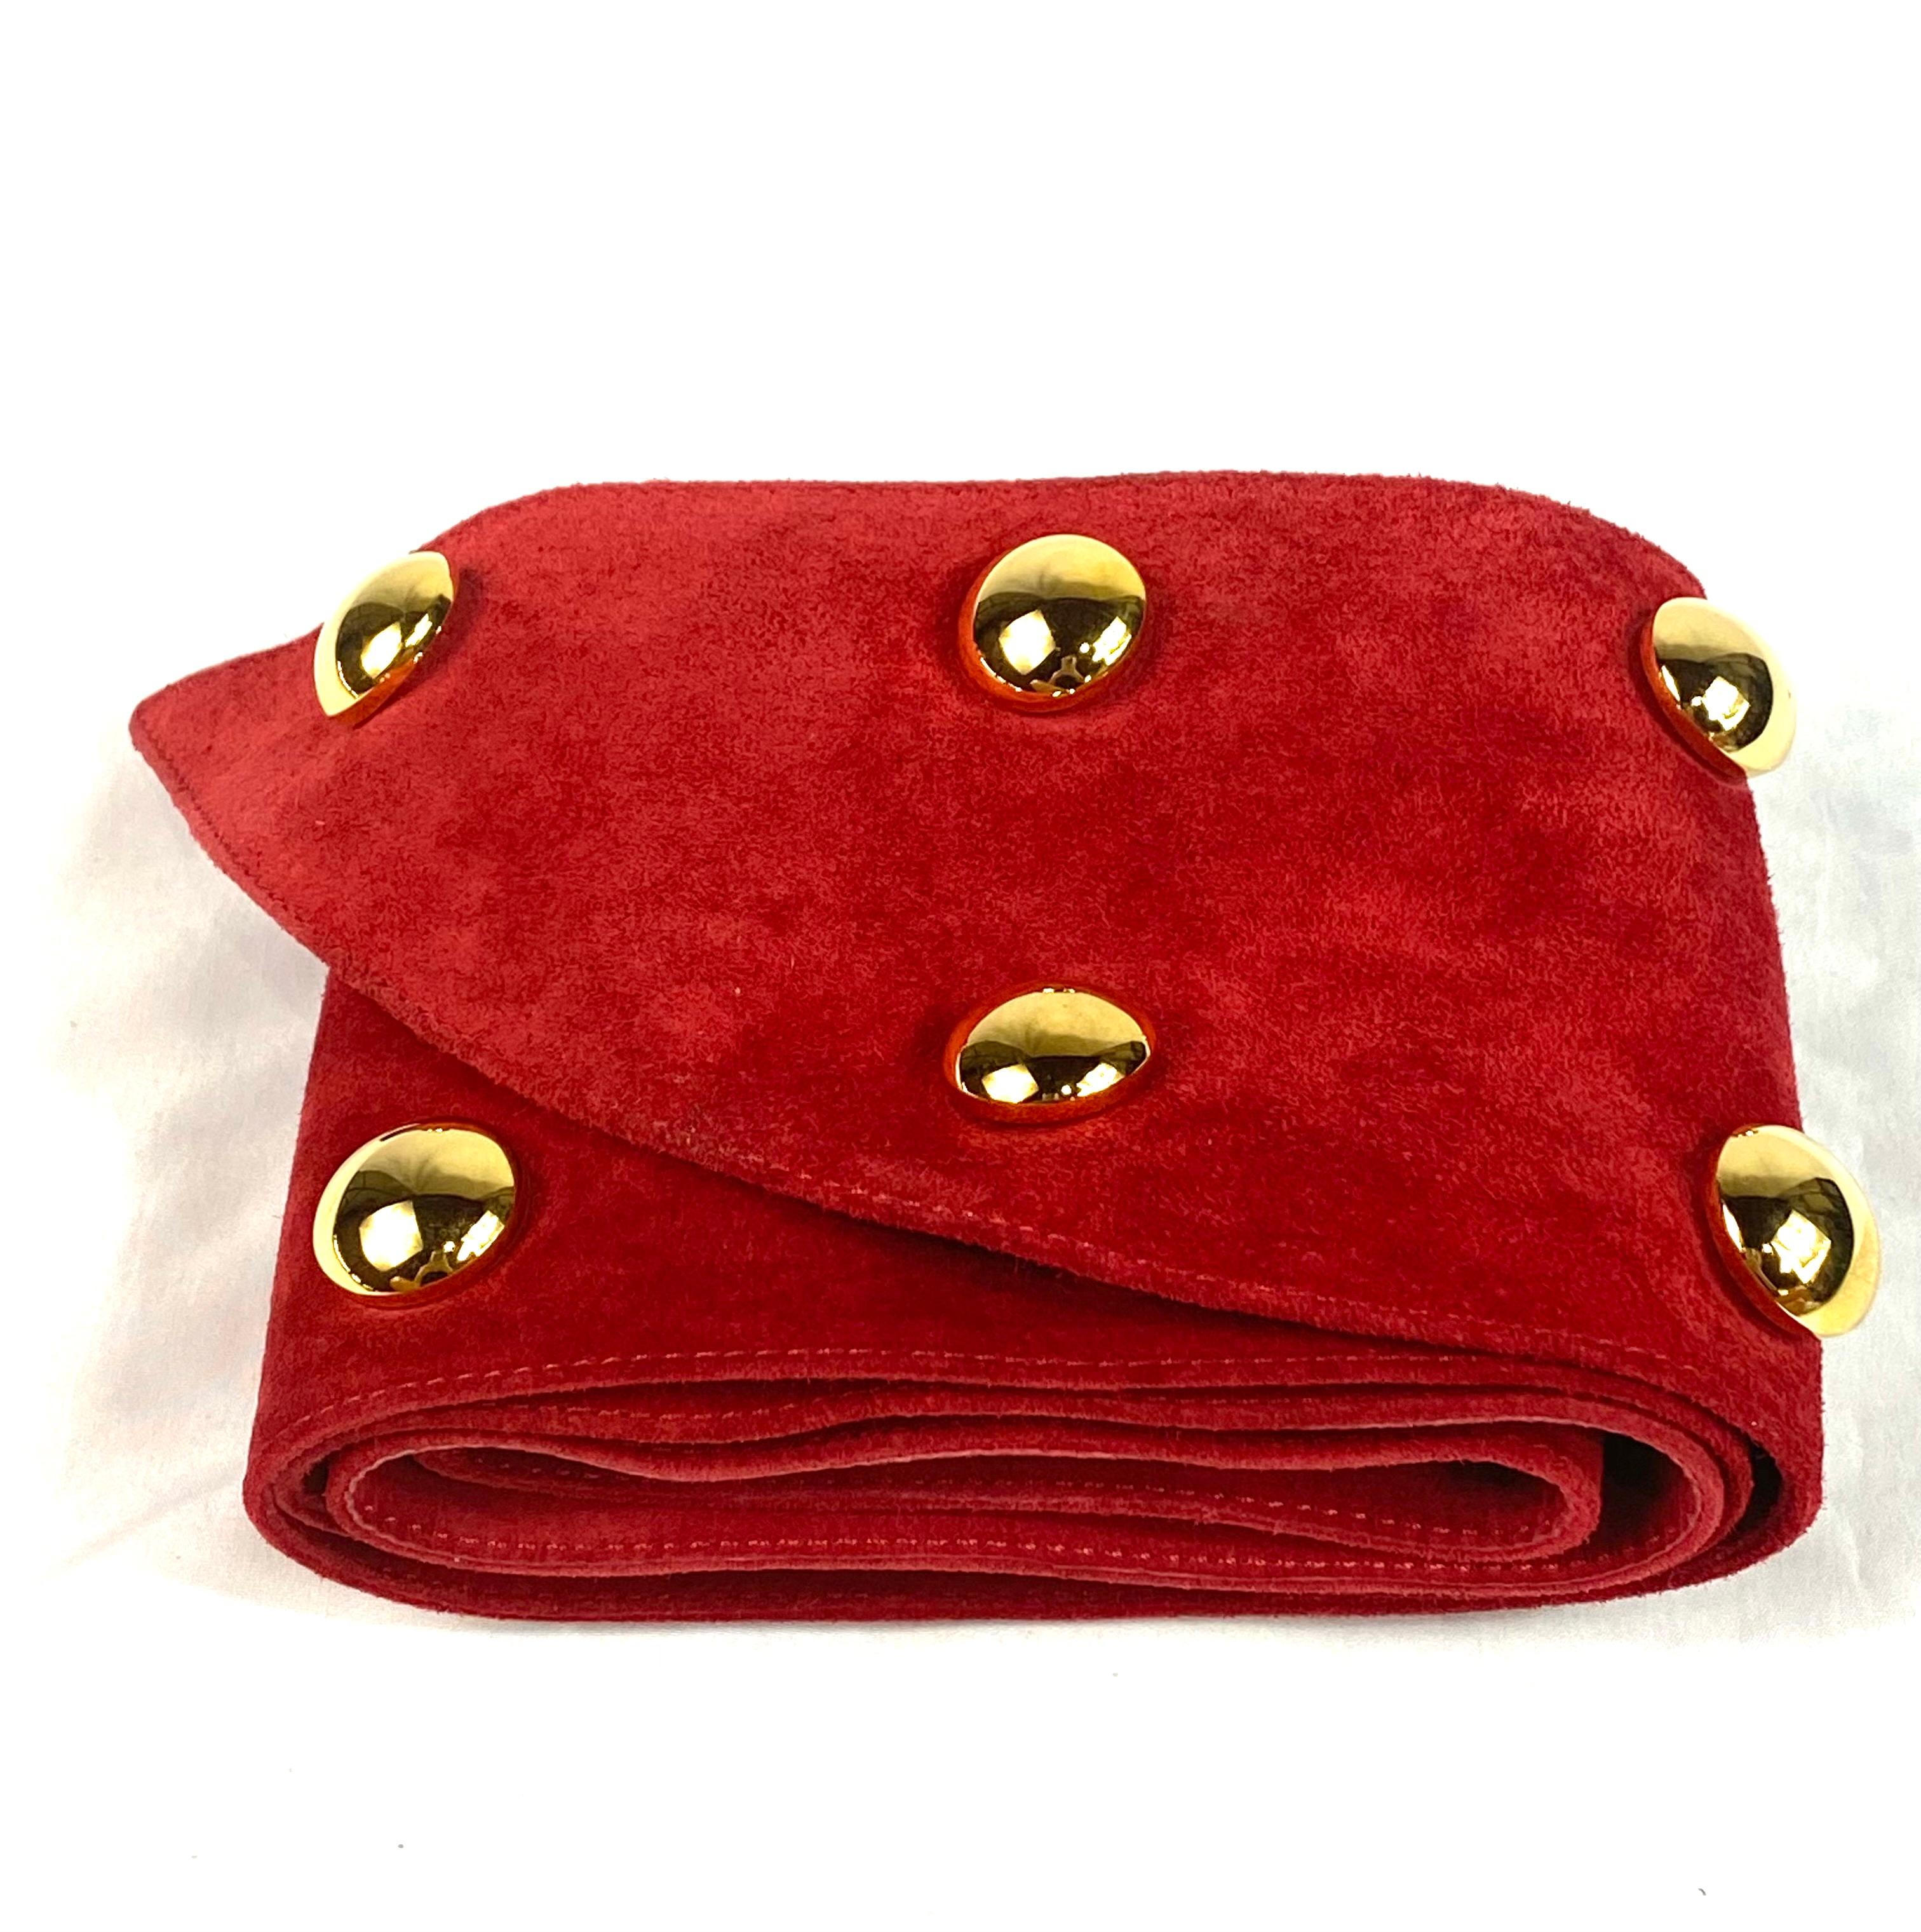 Détails du produit :

La ceinture présente une finition en daim rouge, agrémentée d'une perle plate de couleur or, et mesure 1 pouce de large. Fabriqué en France.